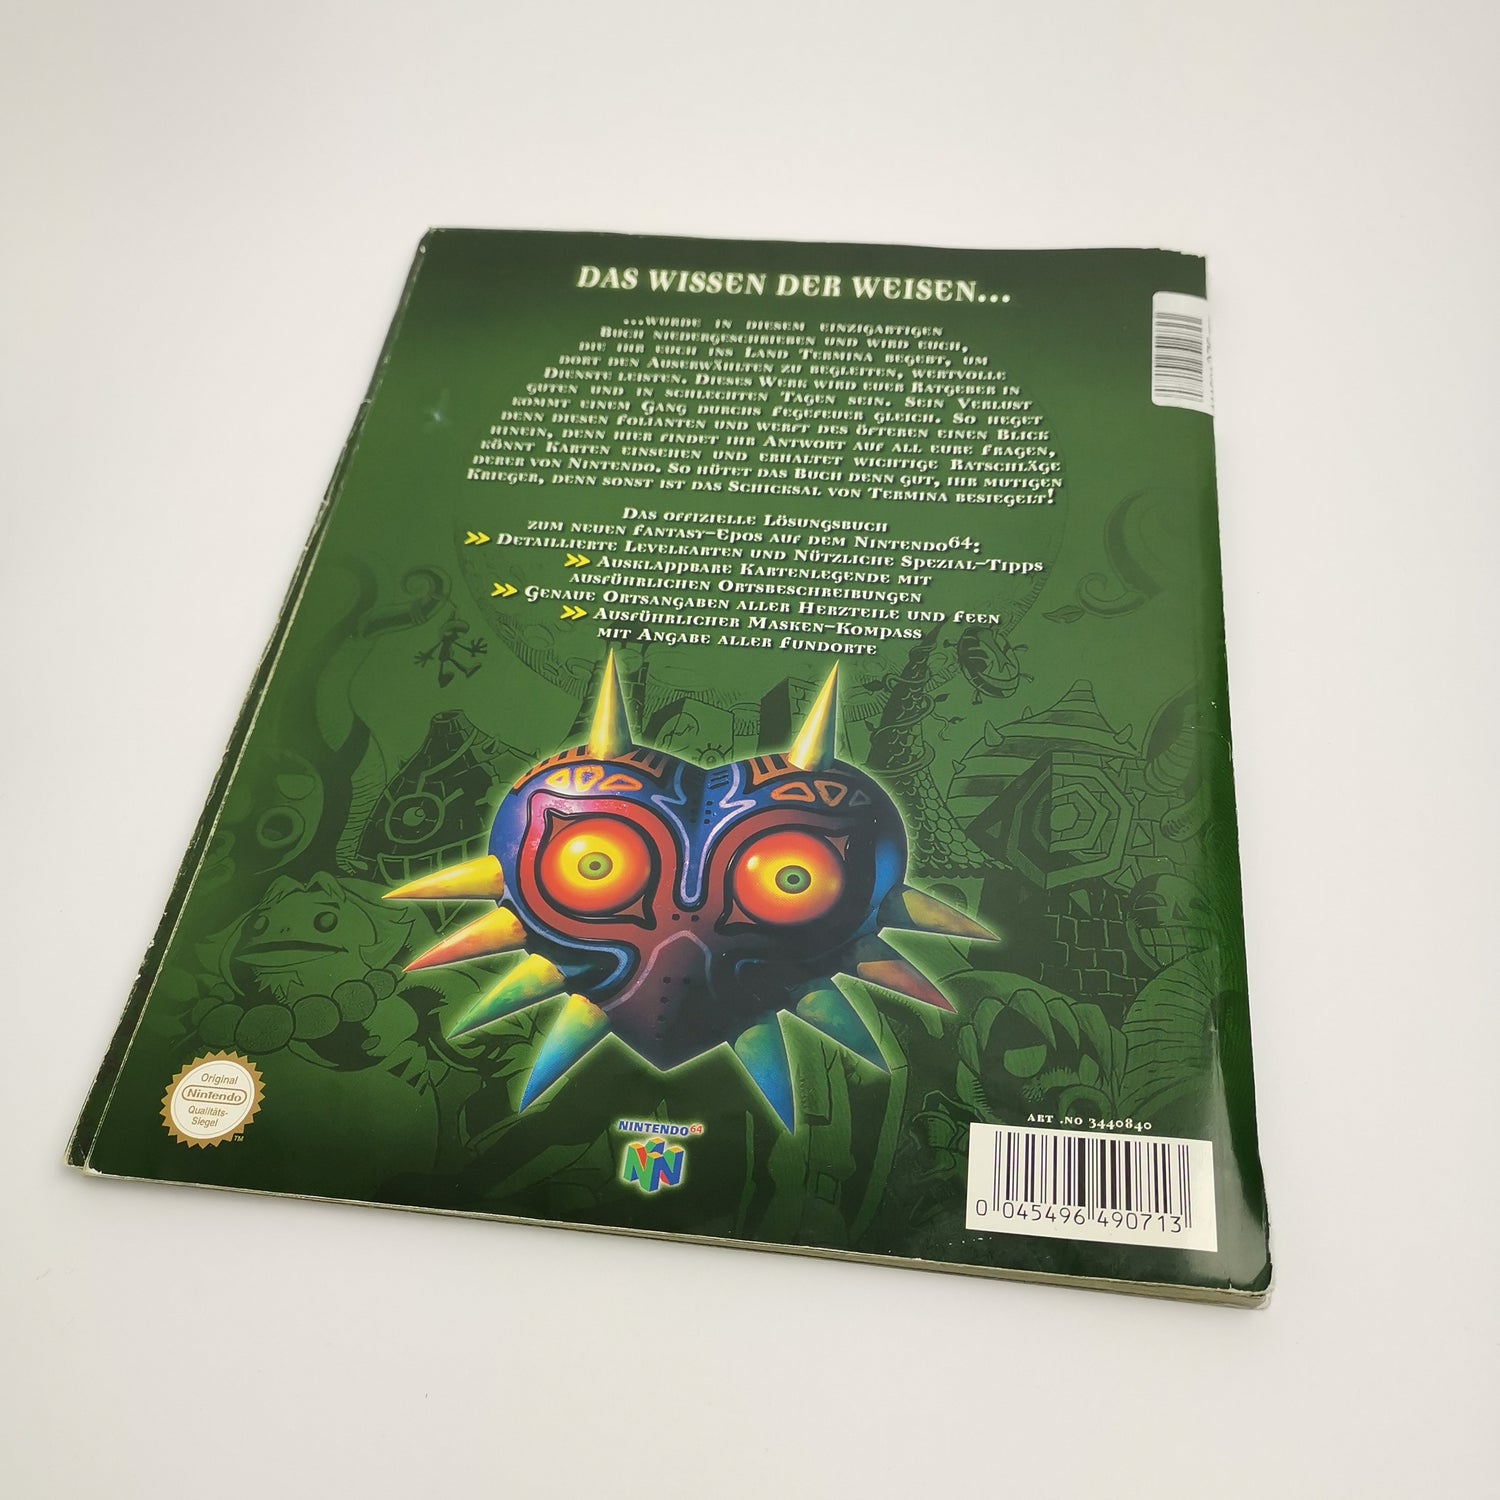 Der offizielle The Legend of Zelda Majoras Mask Spieleberater | N64 Lösungsbuch